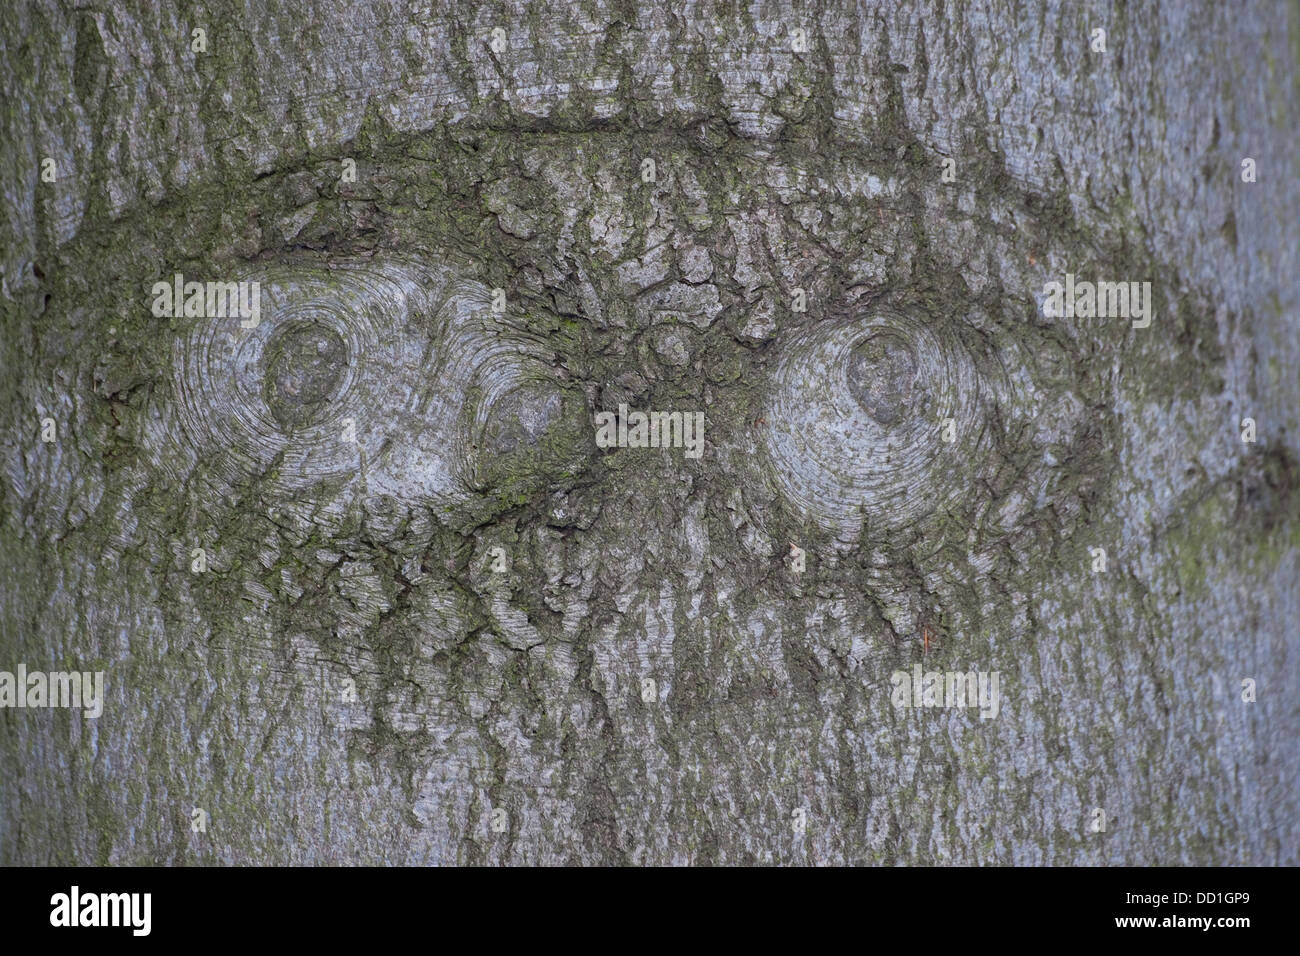 Tree face, bark, trunk, eye, eyes, Baumgesicht, Rinde, Stamm, Waldgeist, Auge, Baumgeist, Naturgeist, natural mind, tree minds Stock Photo